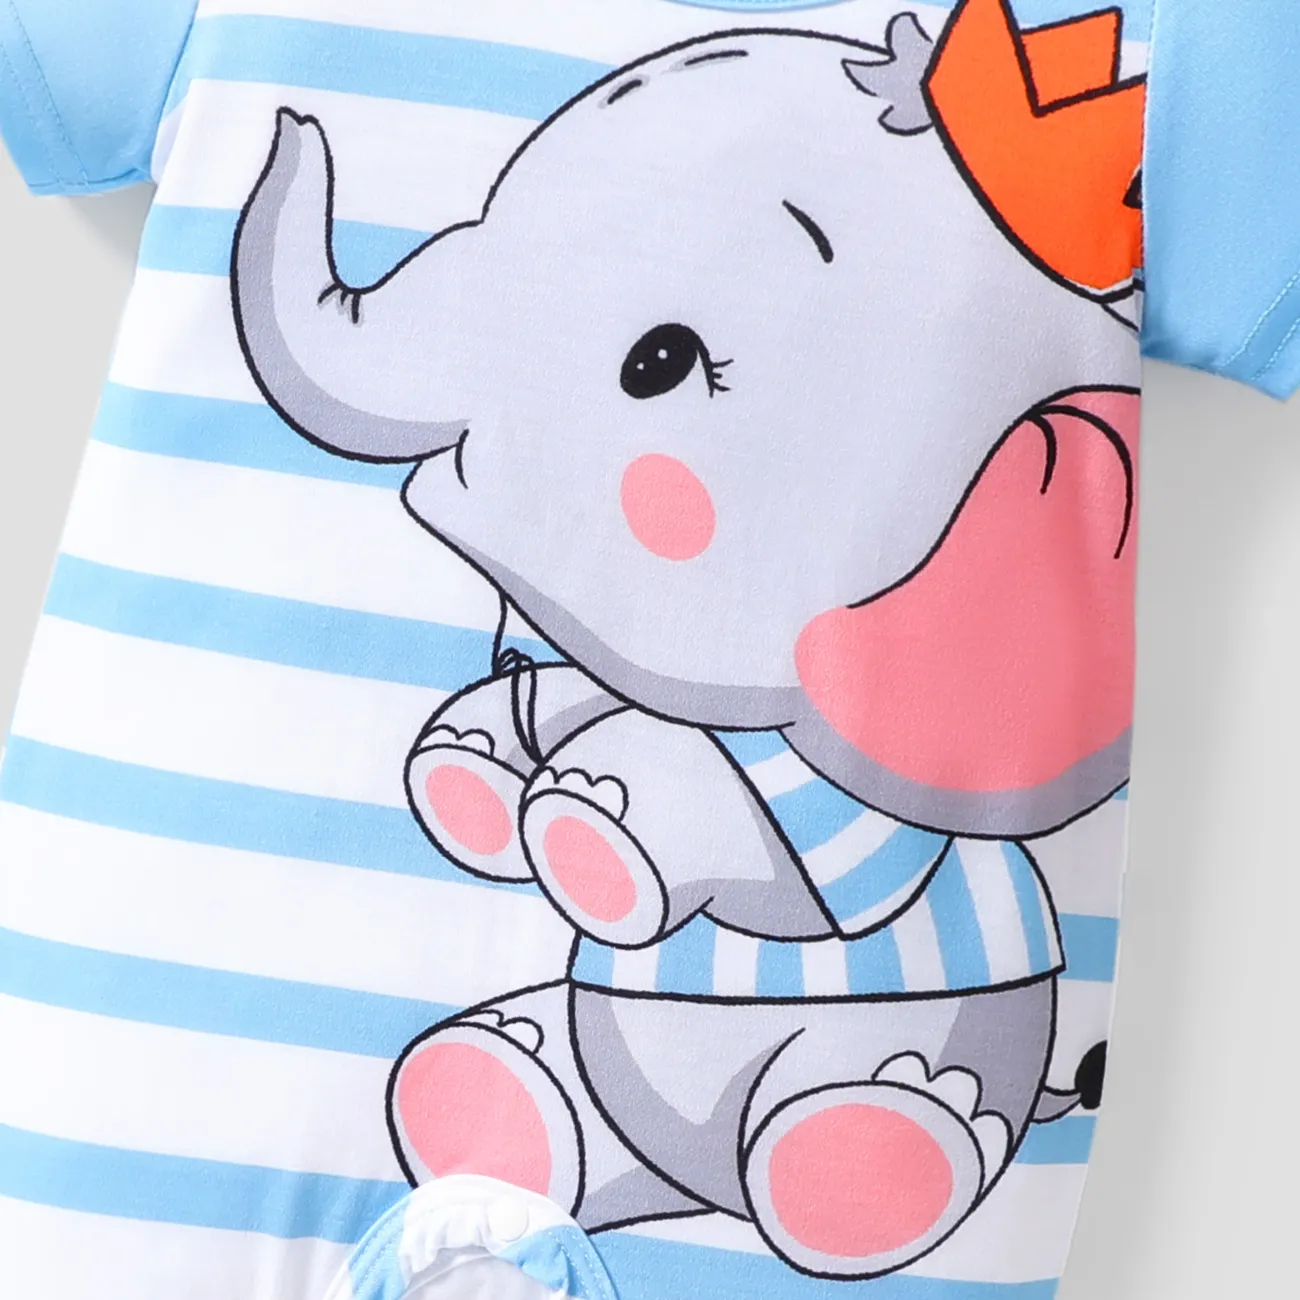 Baby Unisex Elefant Lässig Kurzärmelig Baby-Overalls hellblau big image 1